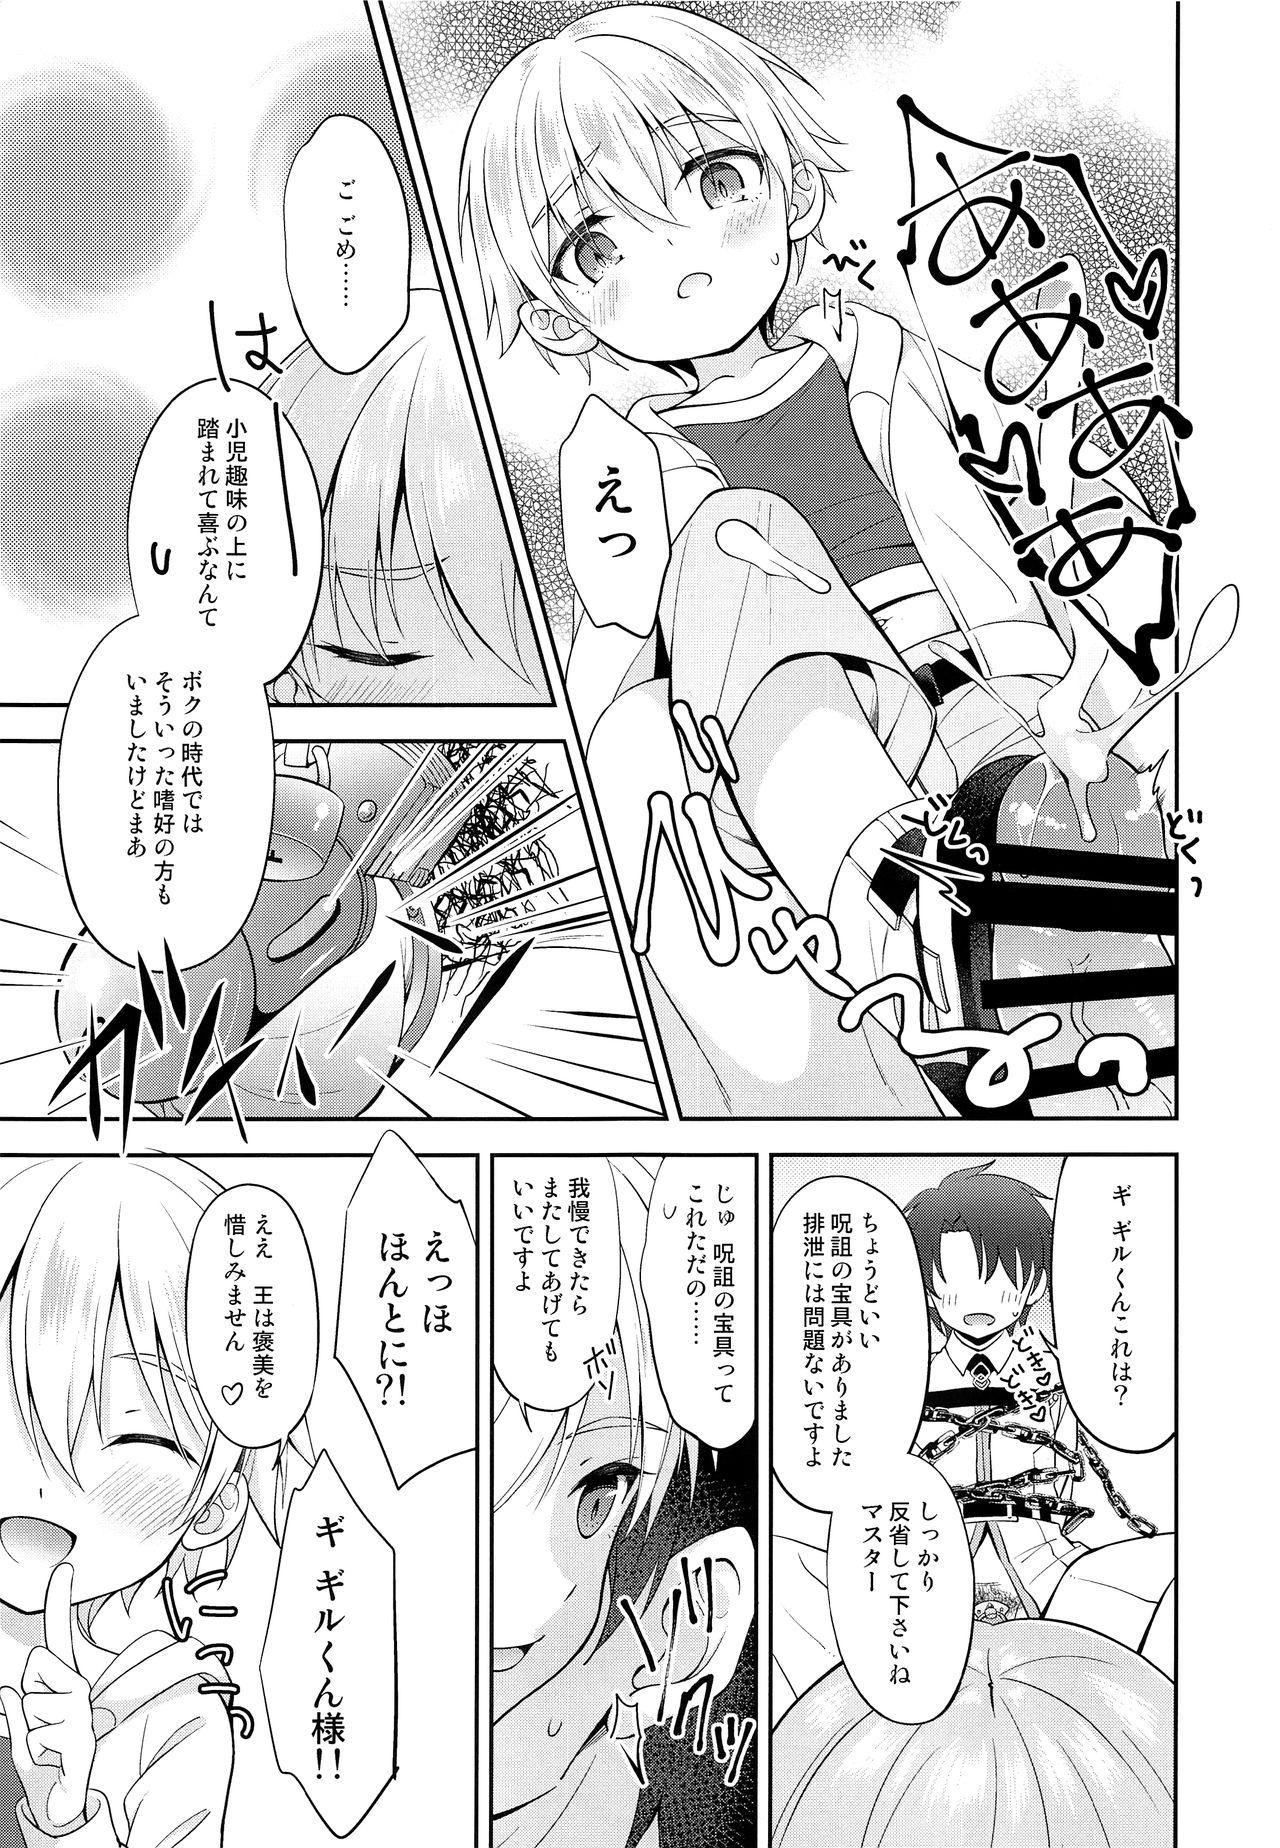 3some Gil-kun You no Shitsuke no Jikan - Fate grand order Pregnant - Page 4